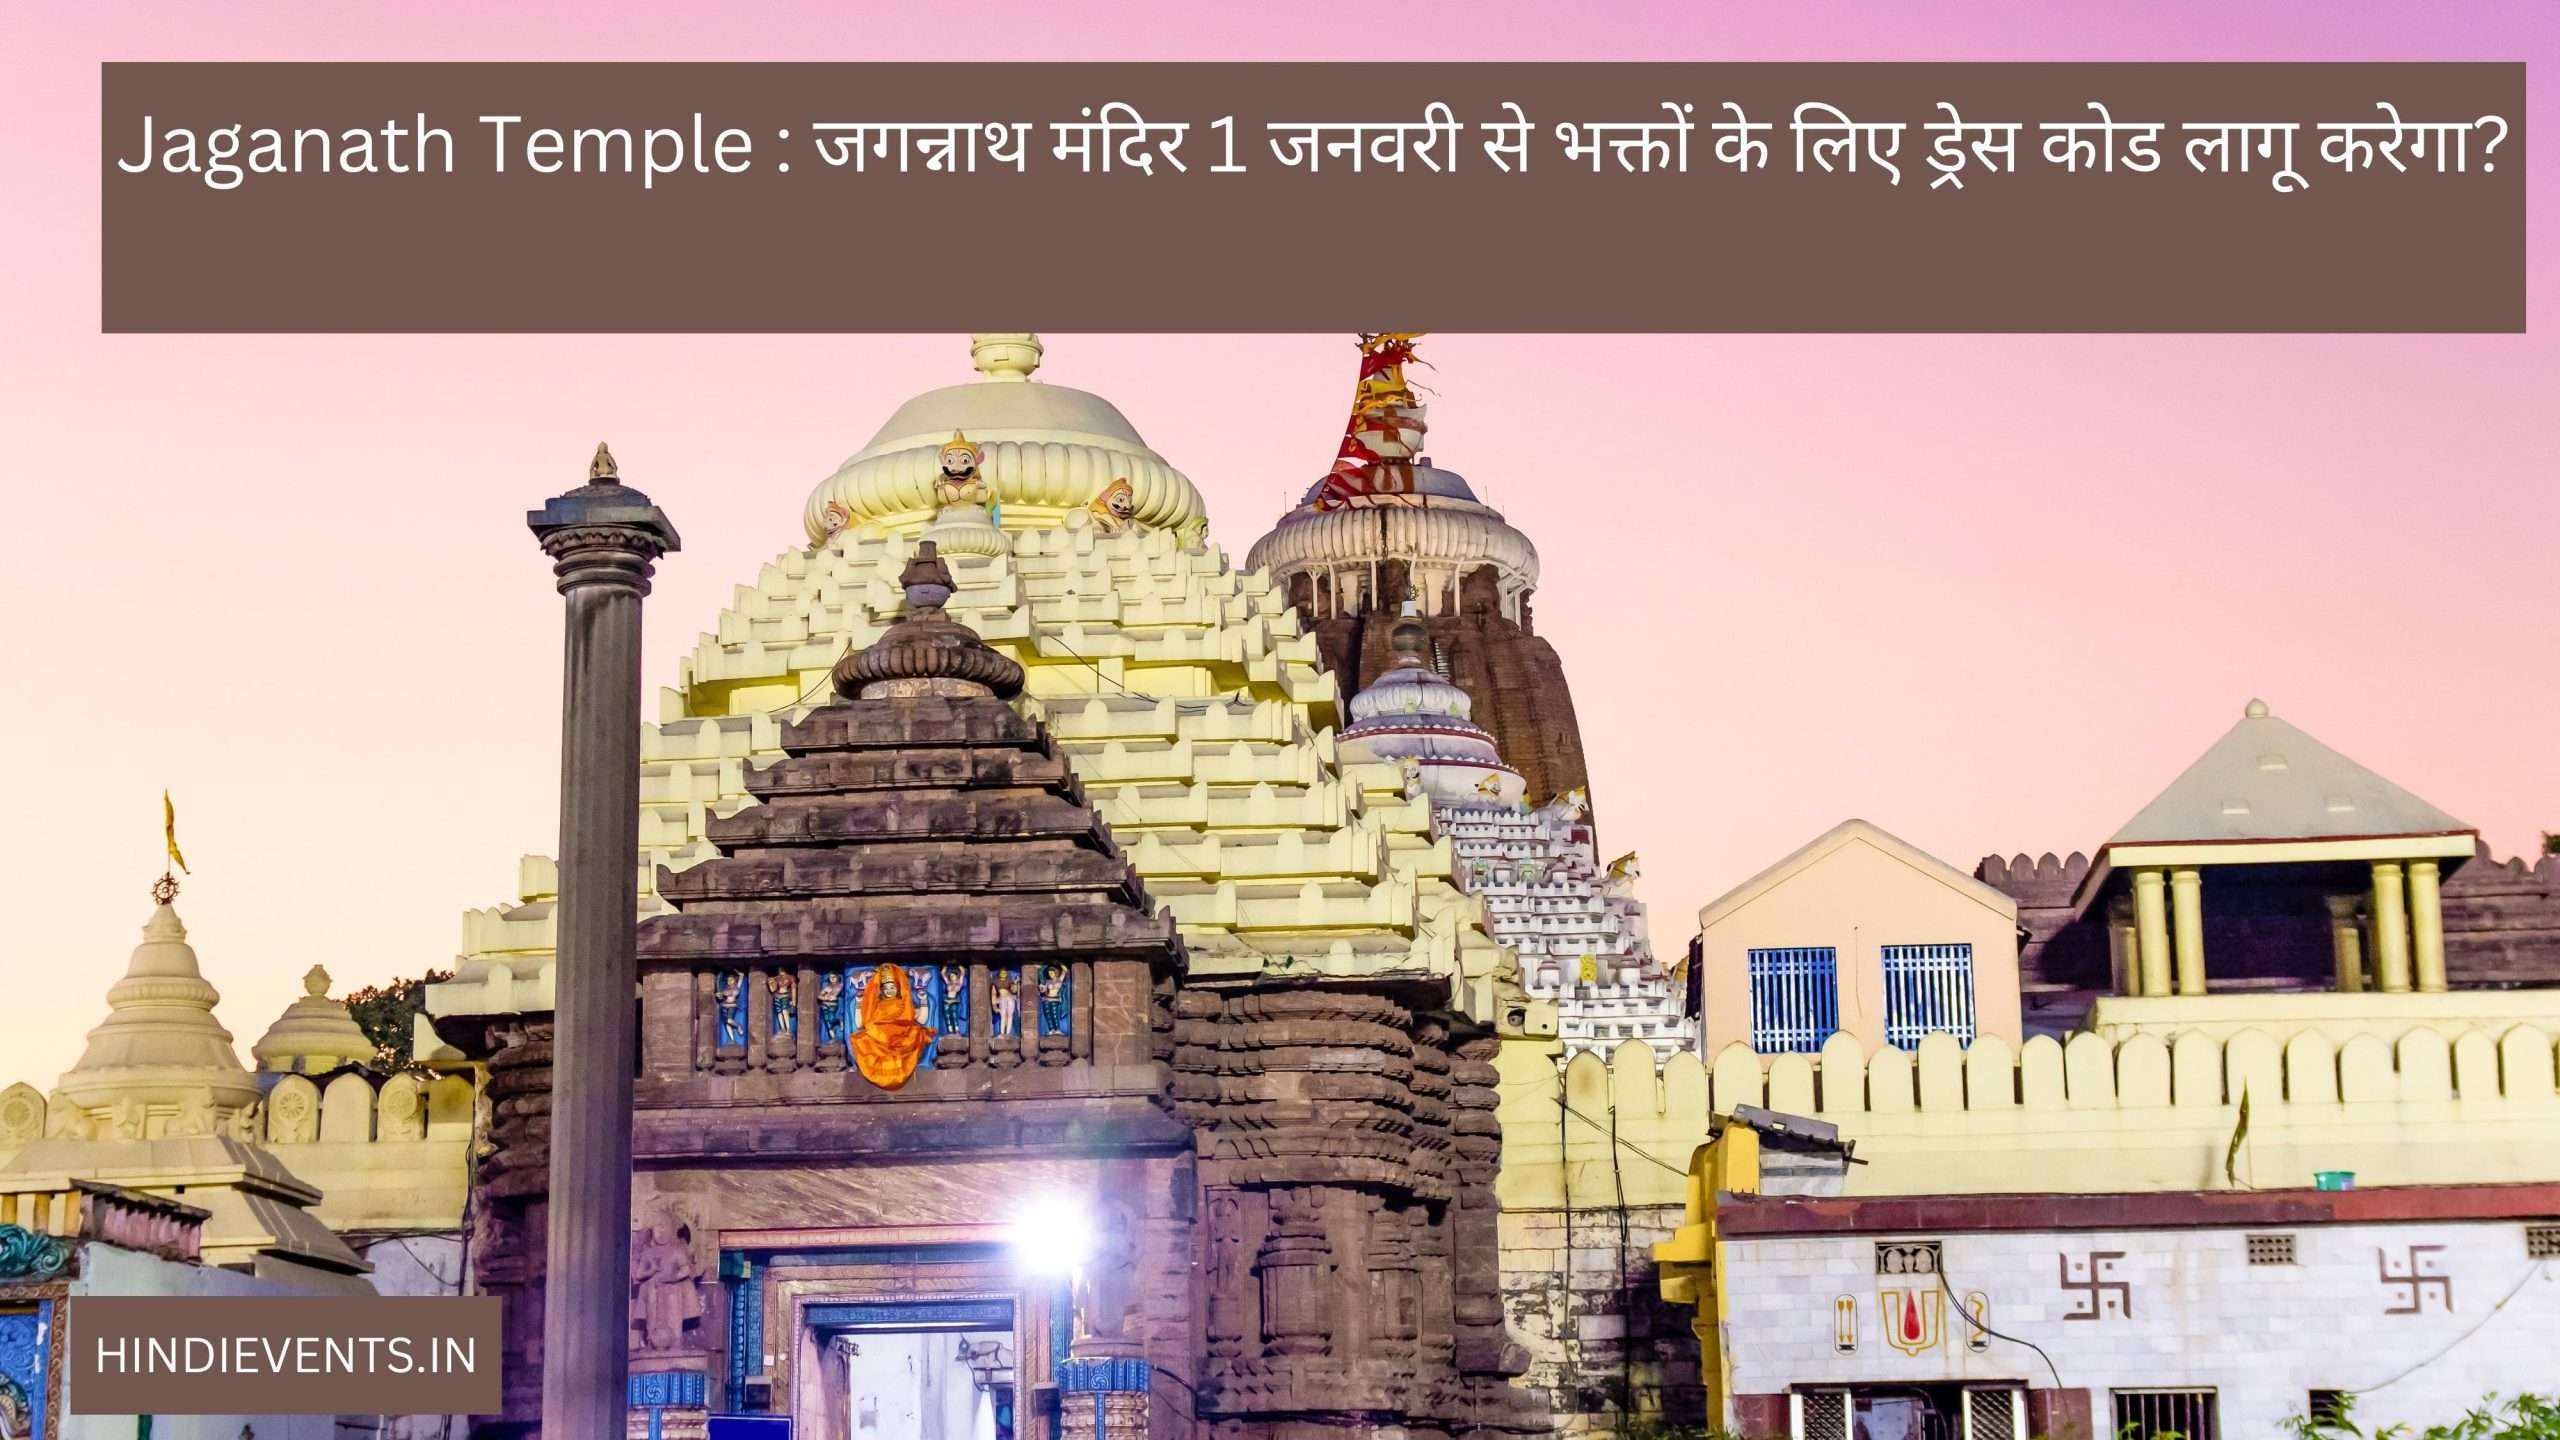 Jaganath Temple : जगन्नाथ मंदिर 1 जनवरी से भक्तों के लिए ड्रेस कोड लागू करेगा?